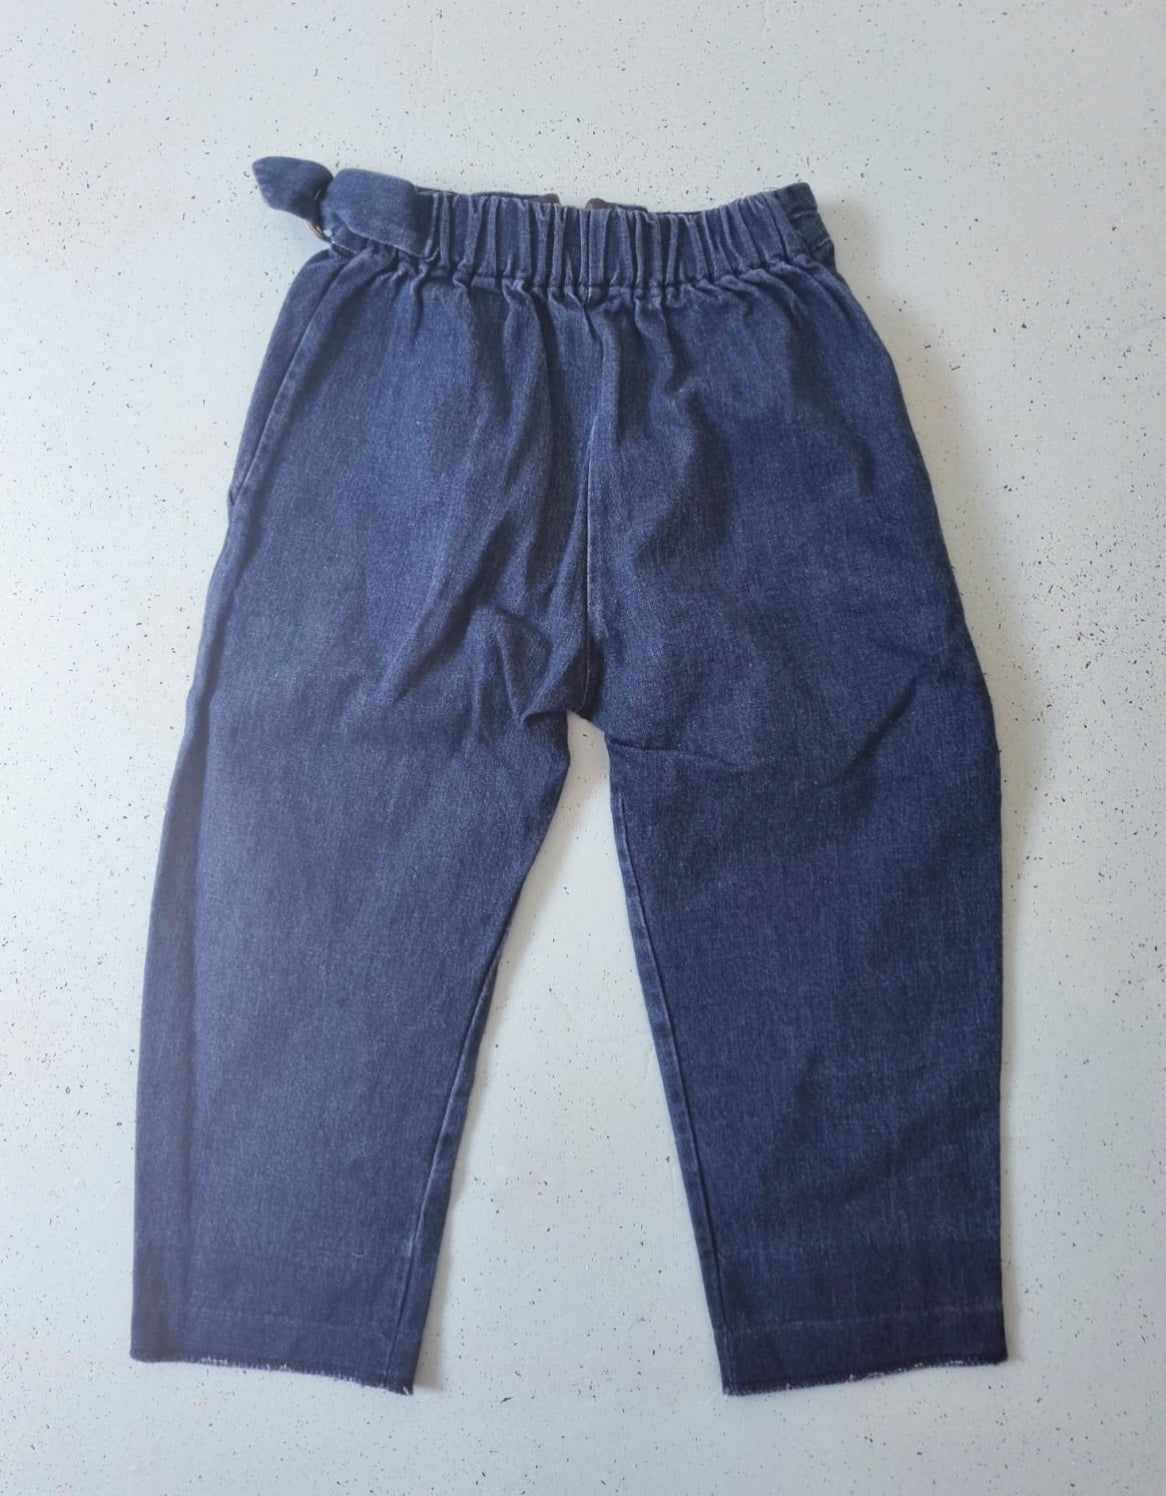 ג׳ינס ארוך עם כפתורים צבעוניים - oda-paam.com